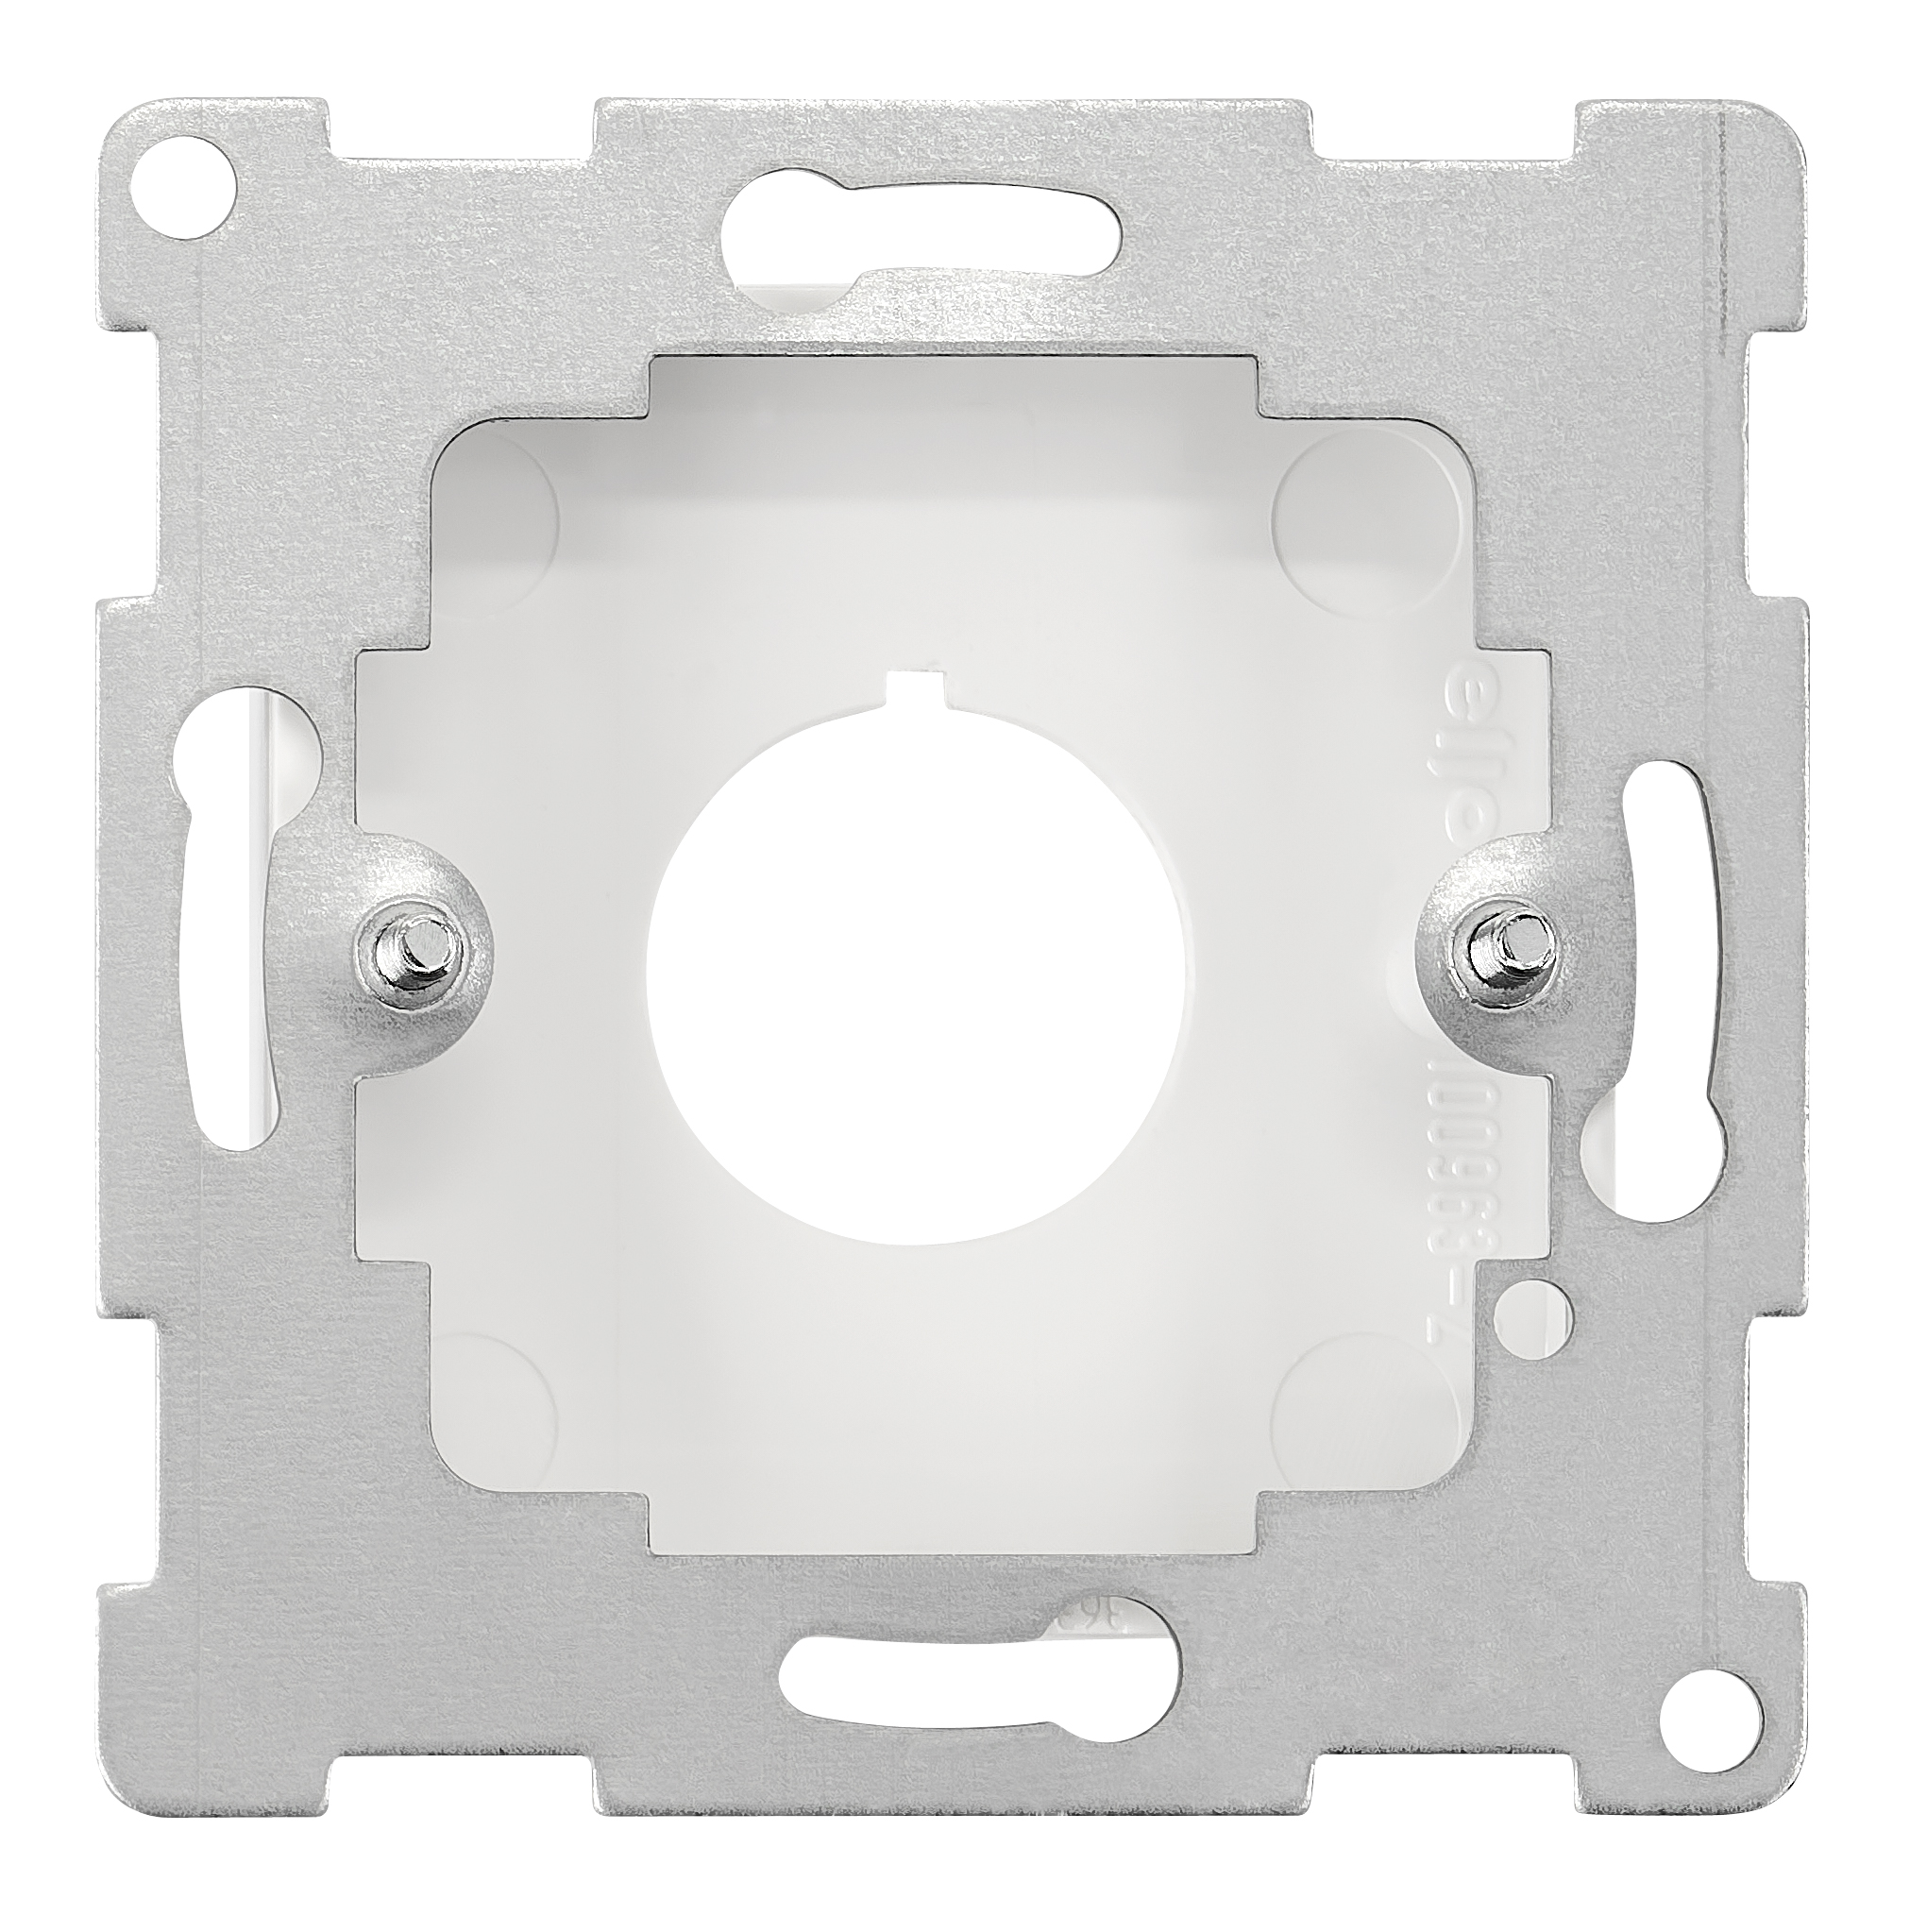 Zentralplatte für Befehls- und Meldegeräte, Ø22,5 mm, weiß